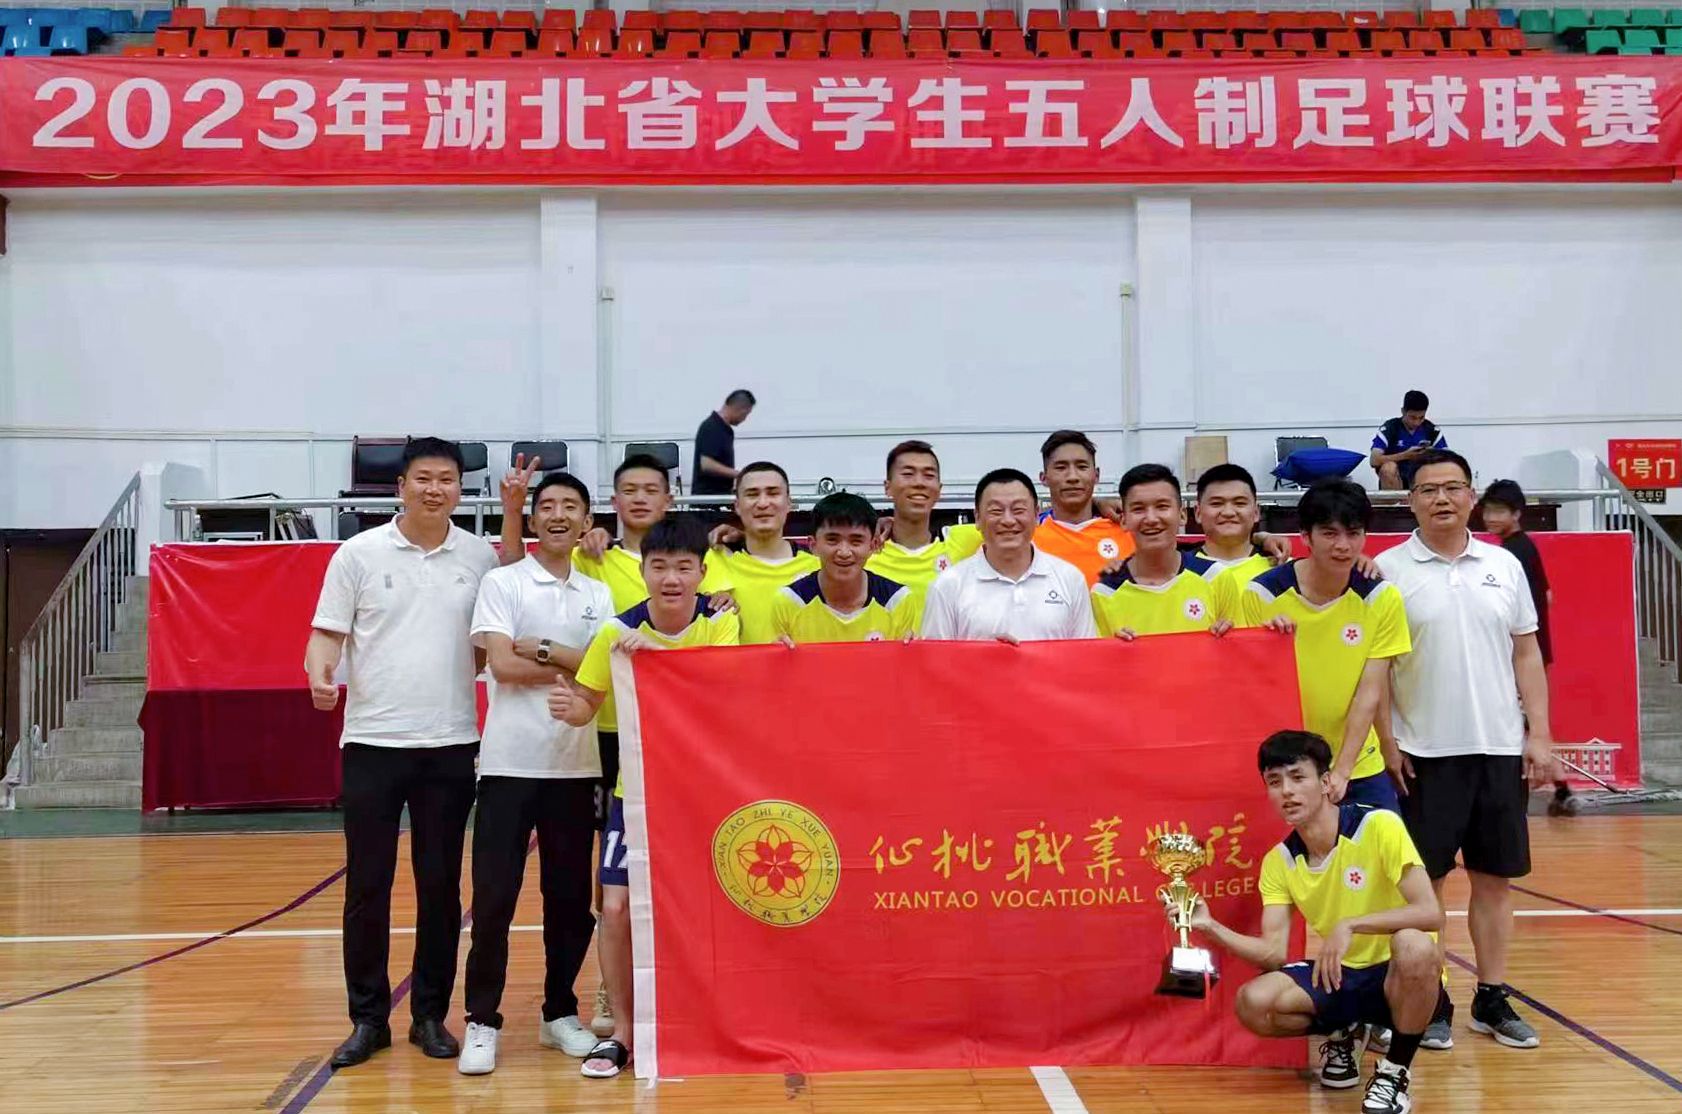 大大中彩票勇夺2023年湖北省大学生五人制足球联赛（高职高专组）冠军